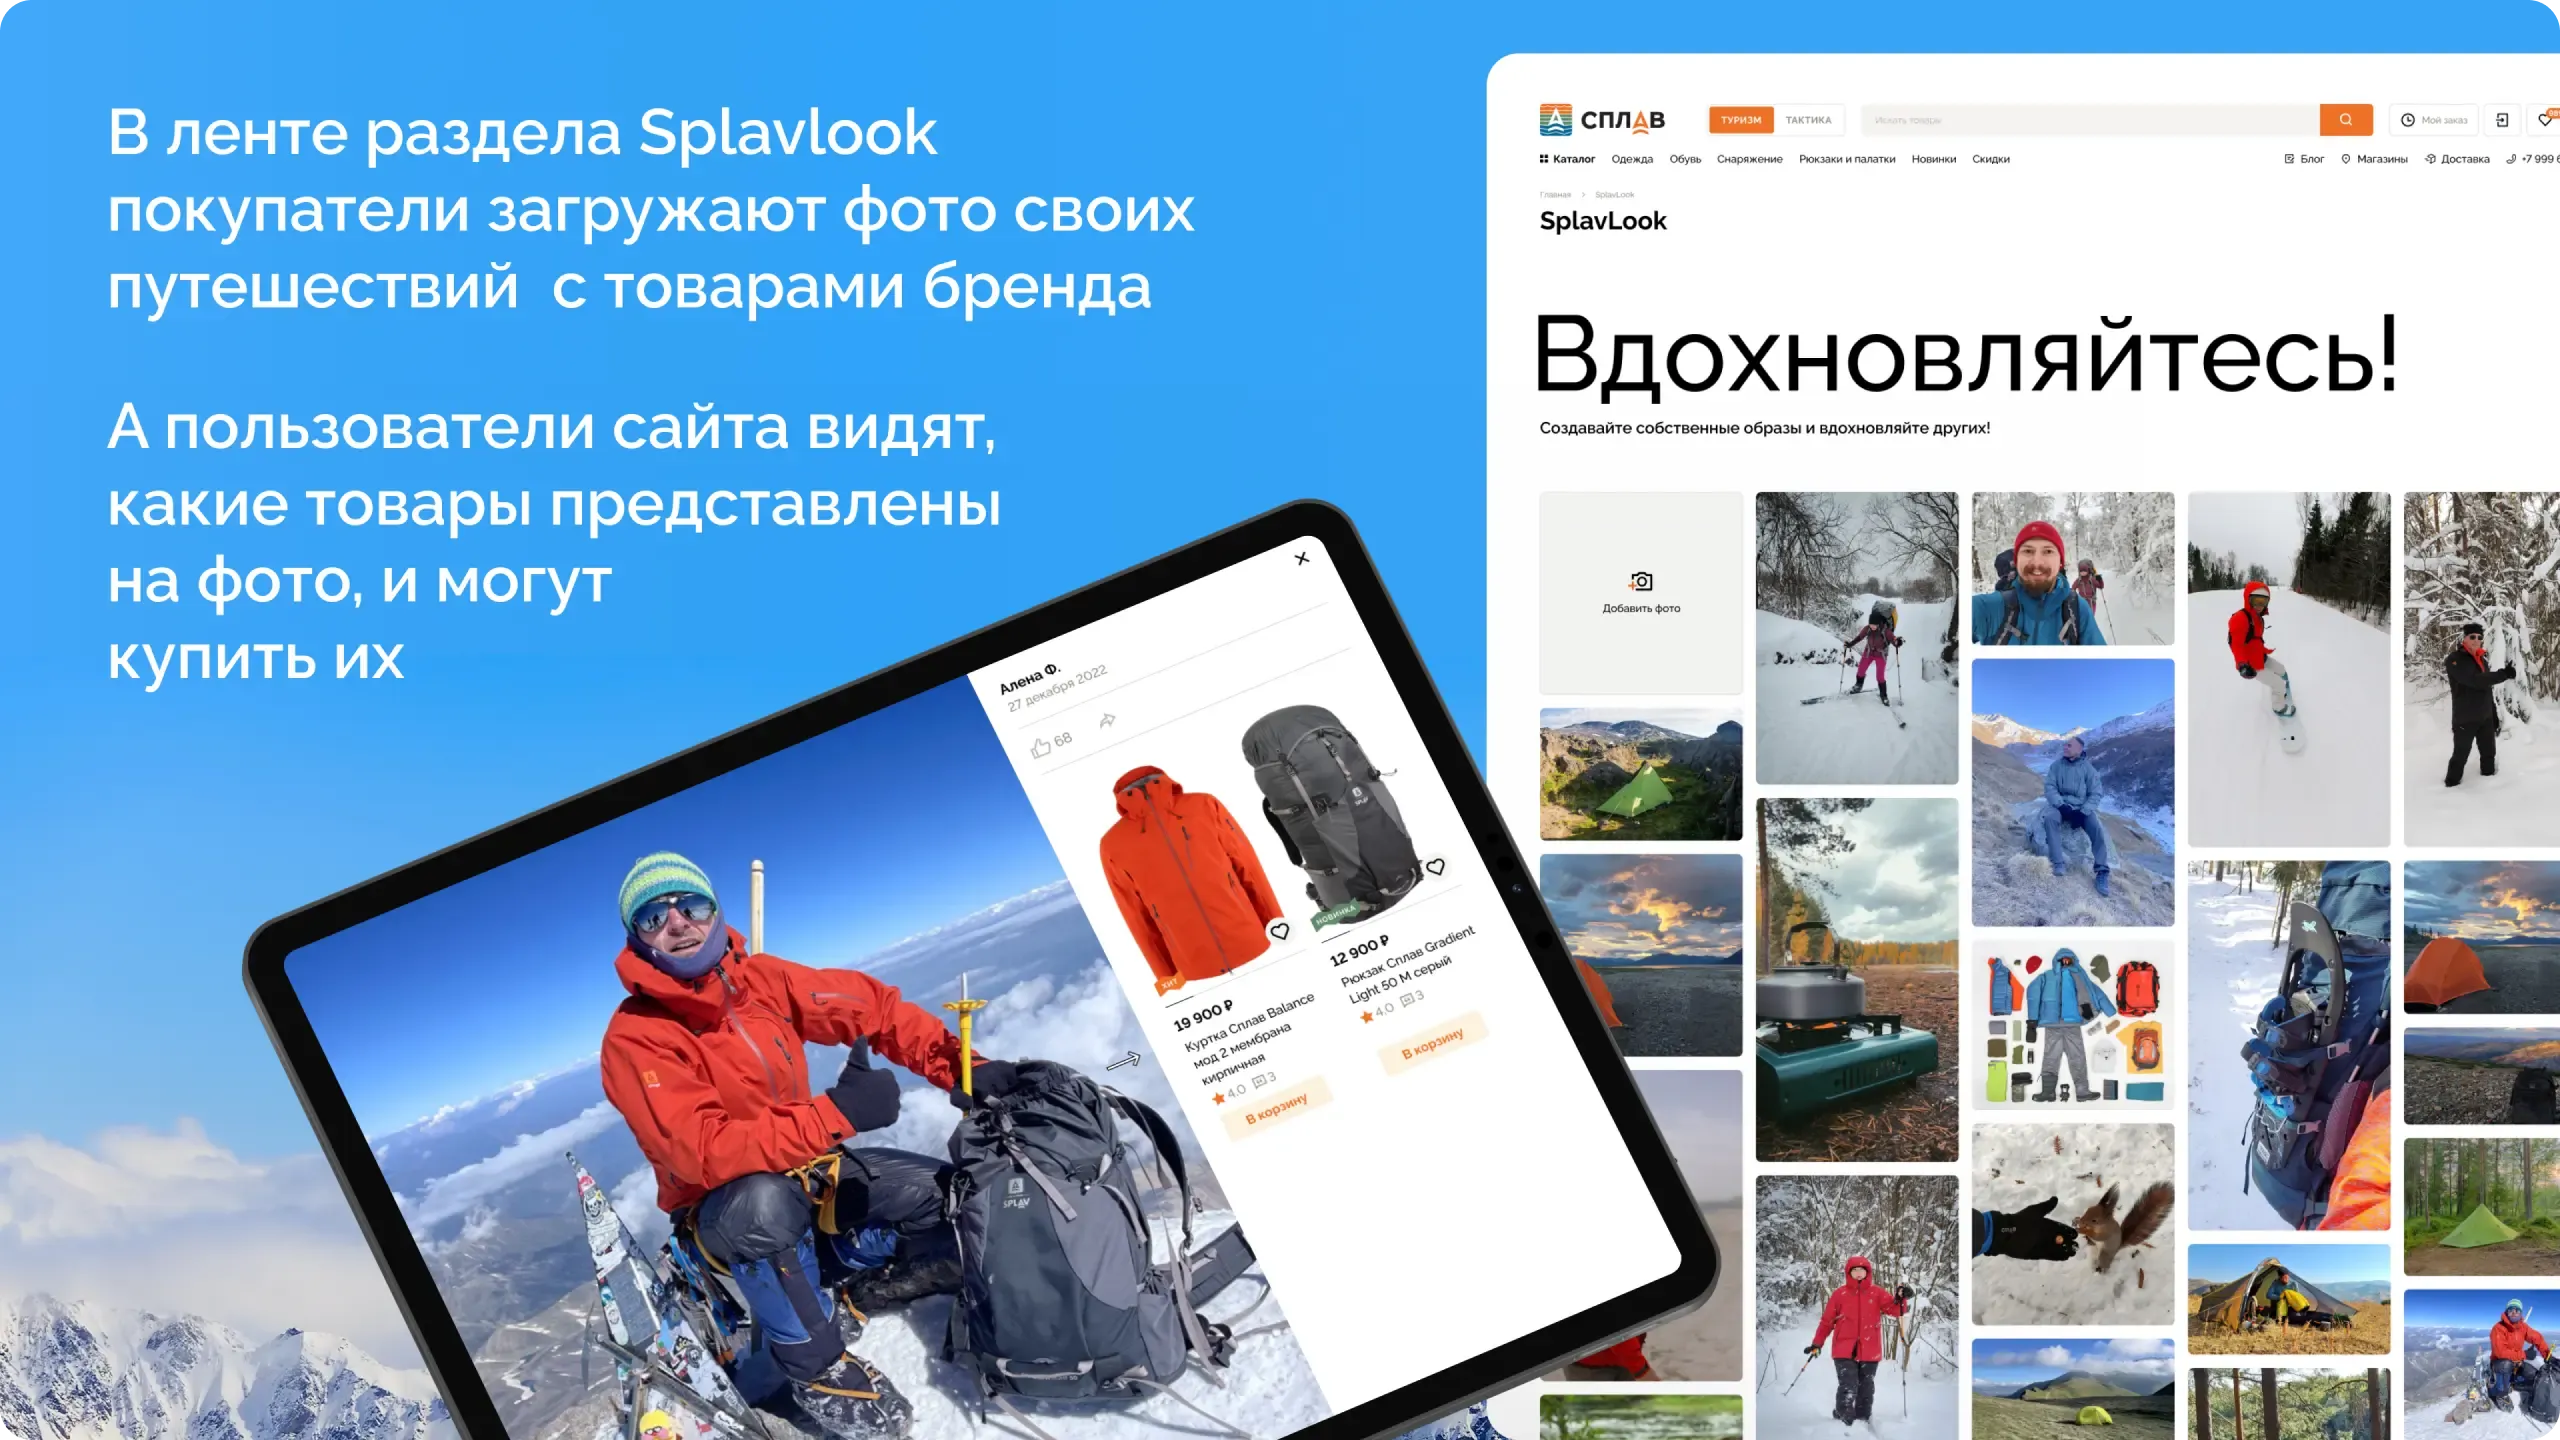 В ленте раздела Splavlook покупатели загружают фото своих путешествий с товарами бренда. А пользователи сайта видят, какие товары представлены на фото, и могут купить их.